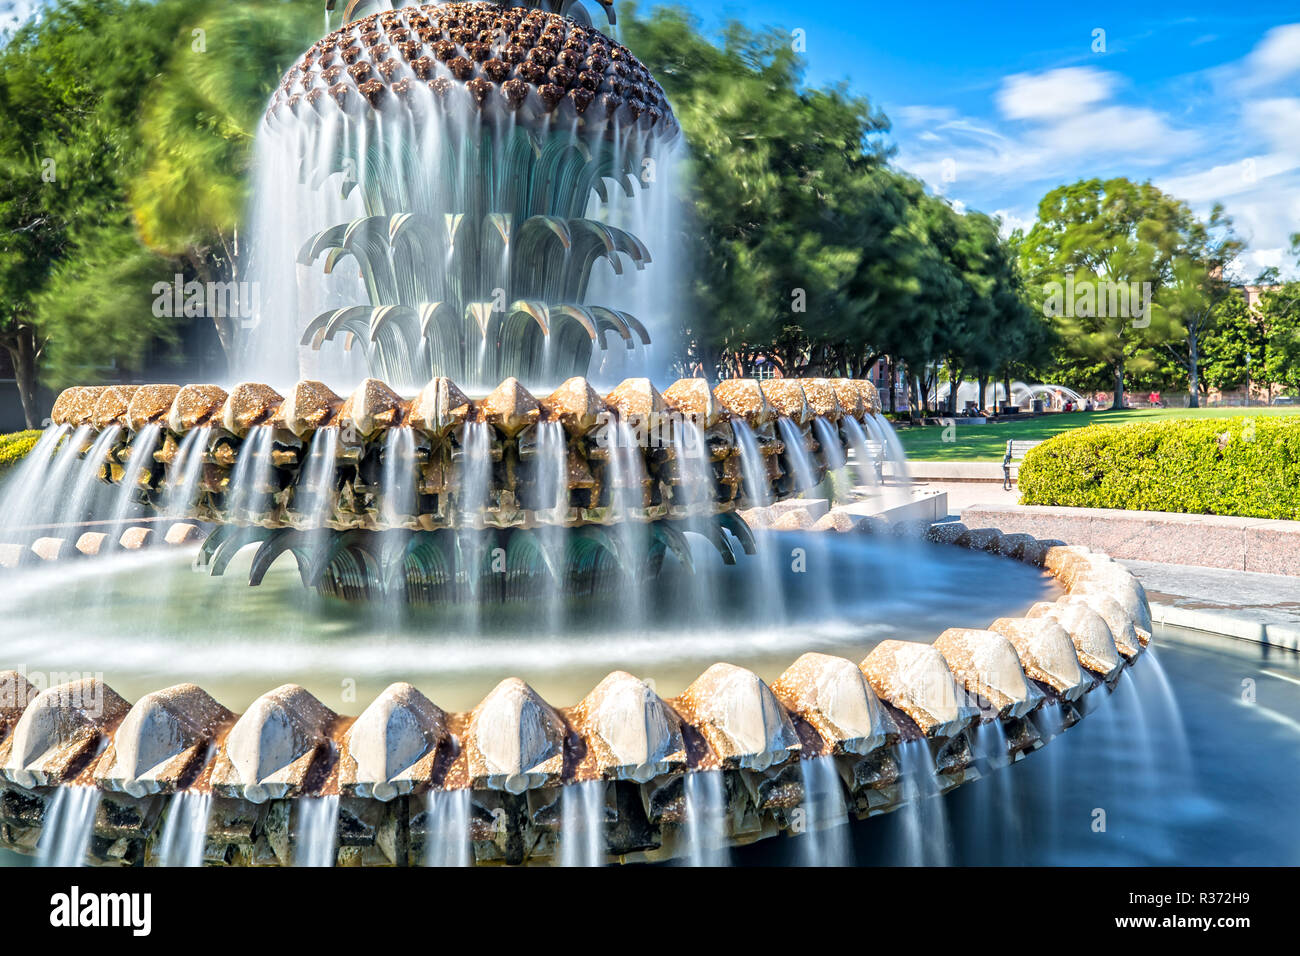 Lunga esposizione della famosa Fontana di ananas in Waterfront Park a Charleston, Sc Foto Stock